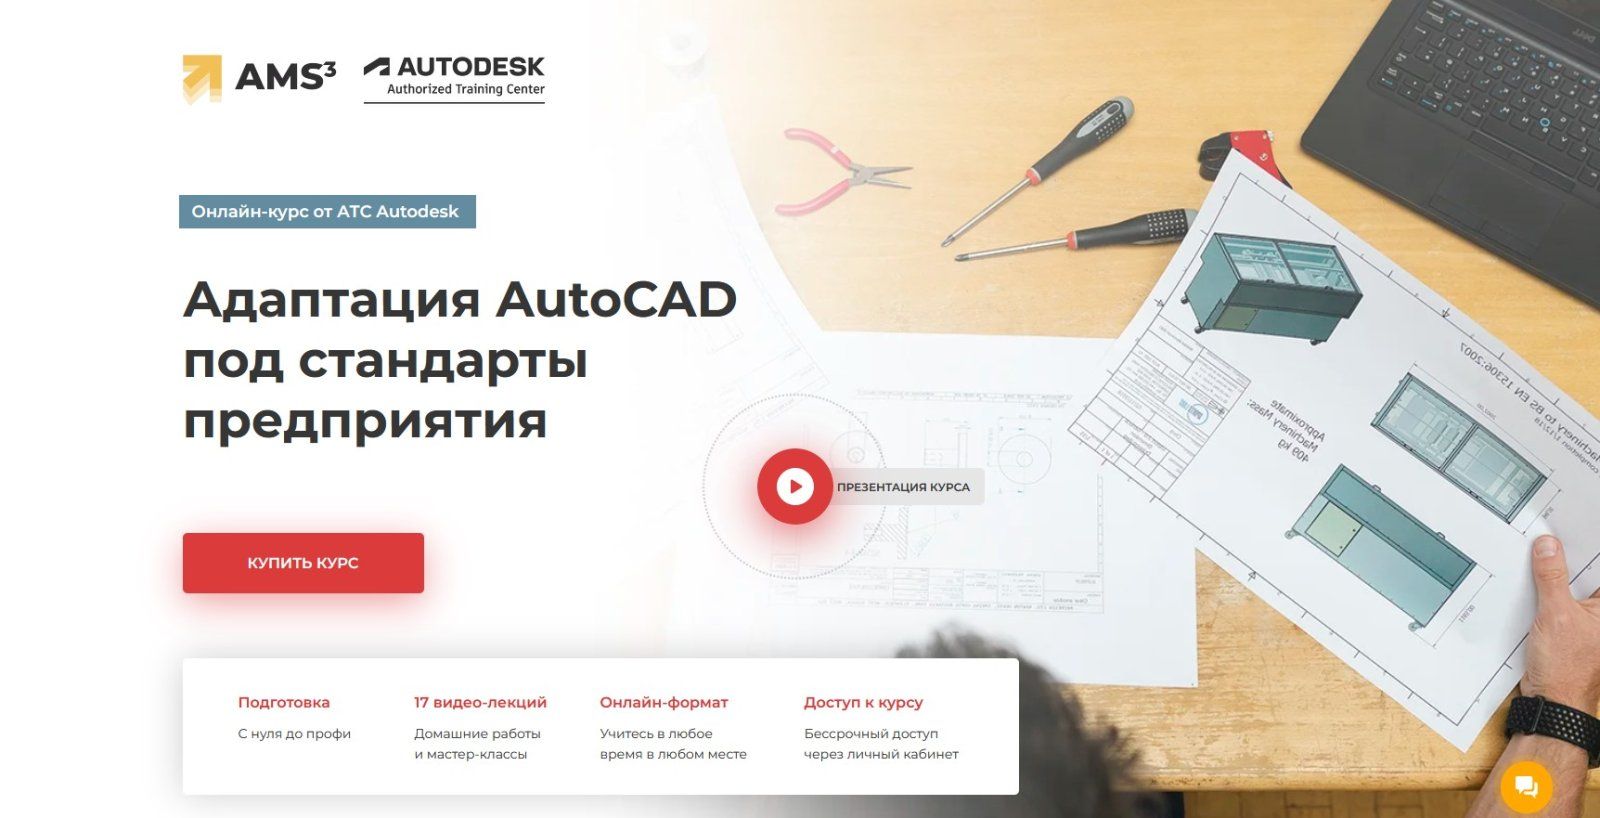 Изображение [Алексей Меркулов] Адаптация AutoCAD под стандарты предприятия (2022) в посте 282971